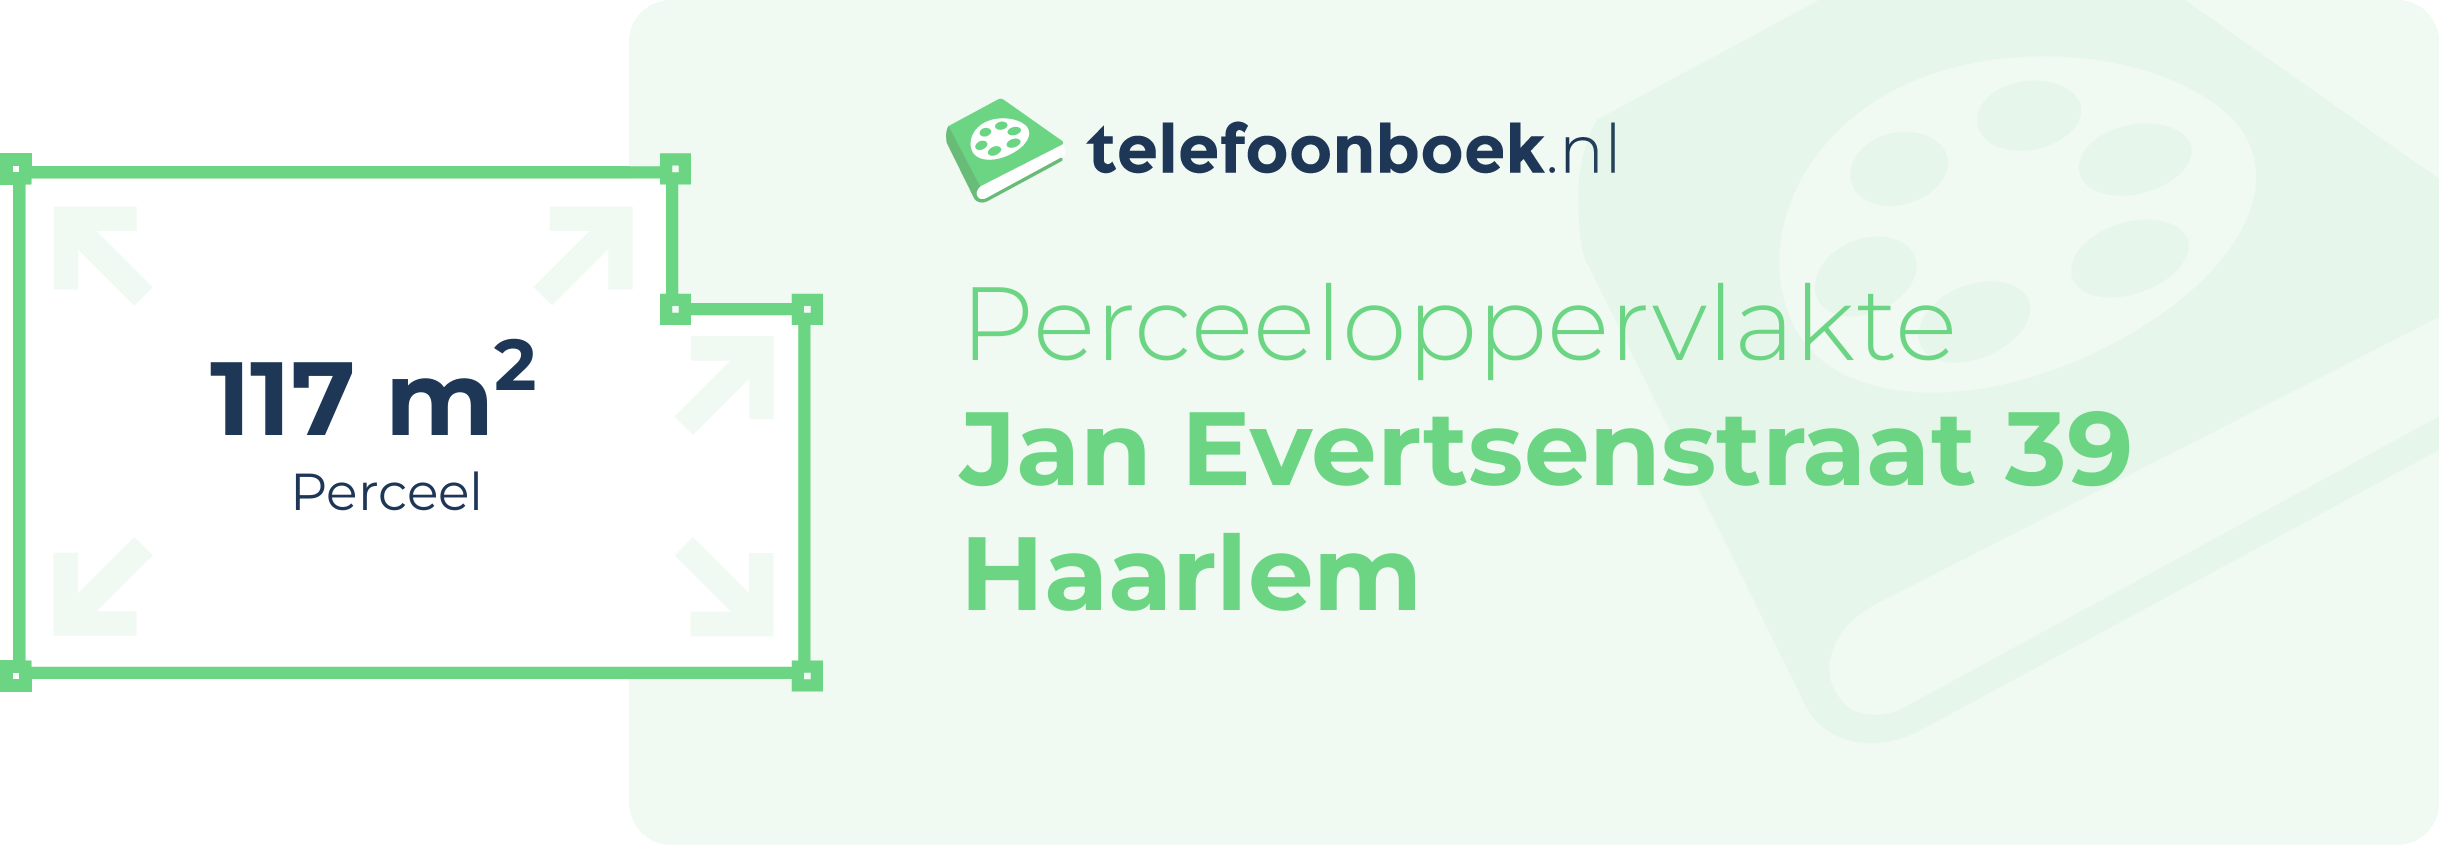 Perceeloppervlakte Jan Evertsenstraat 39 Haarlem